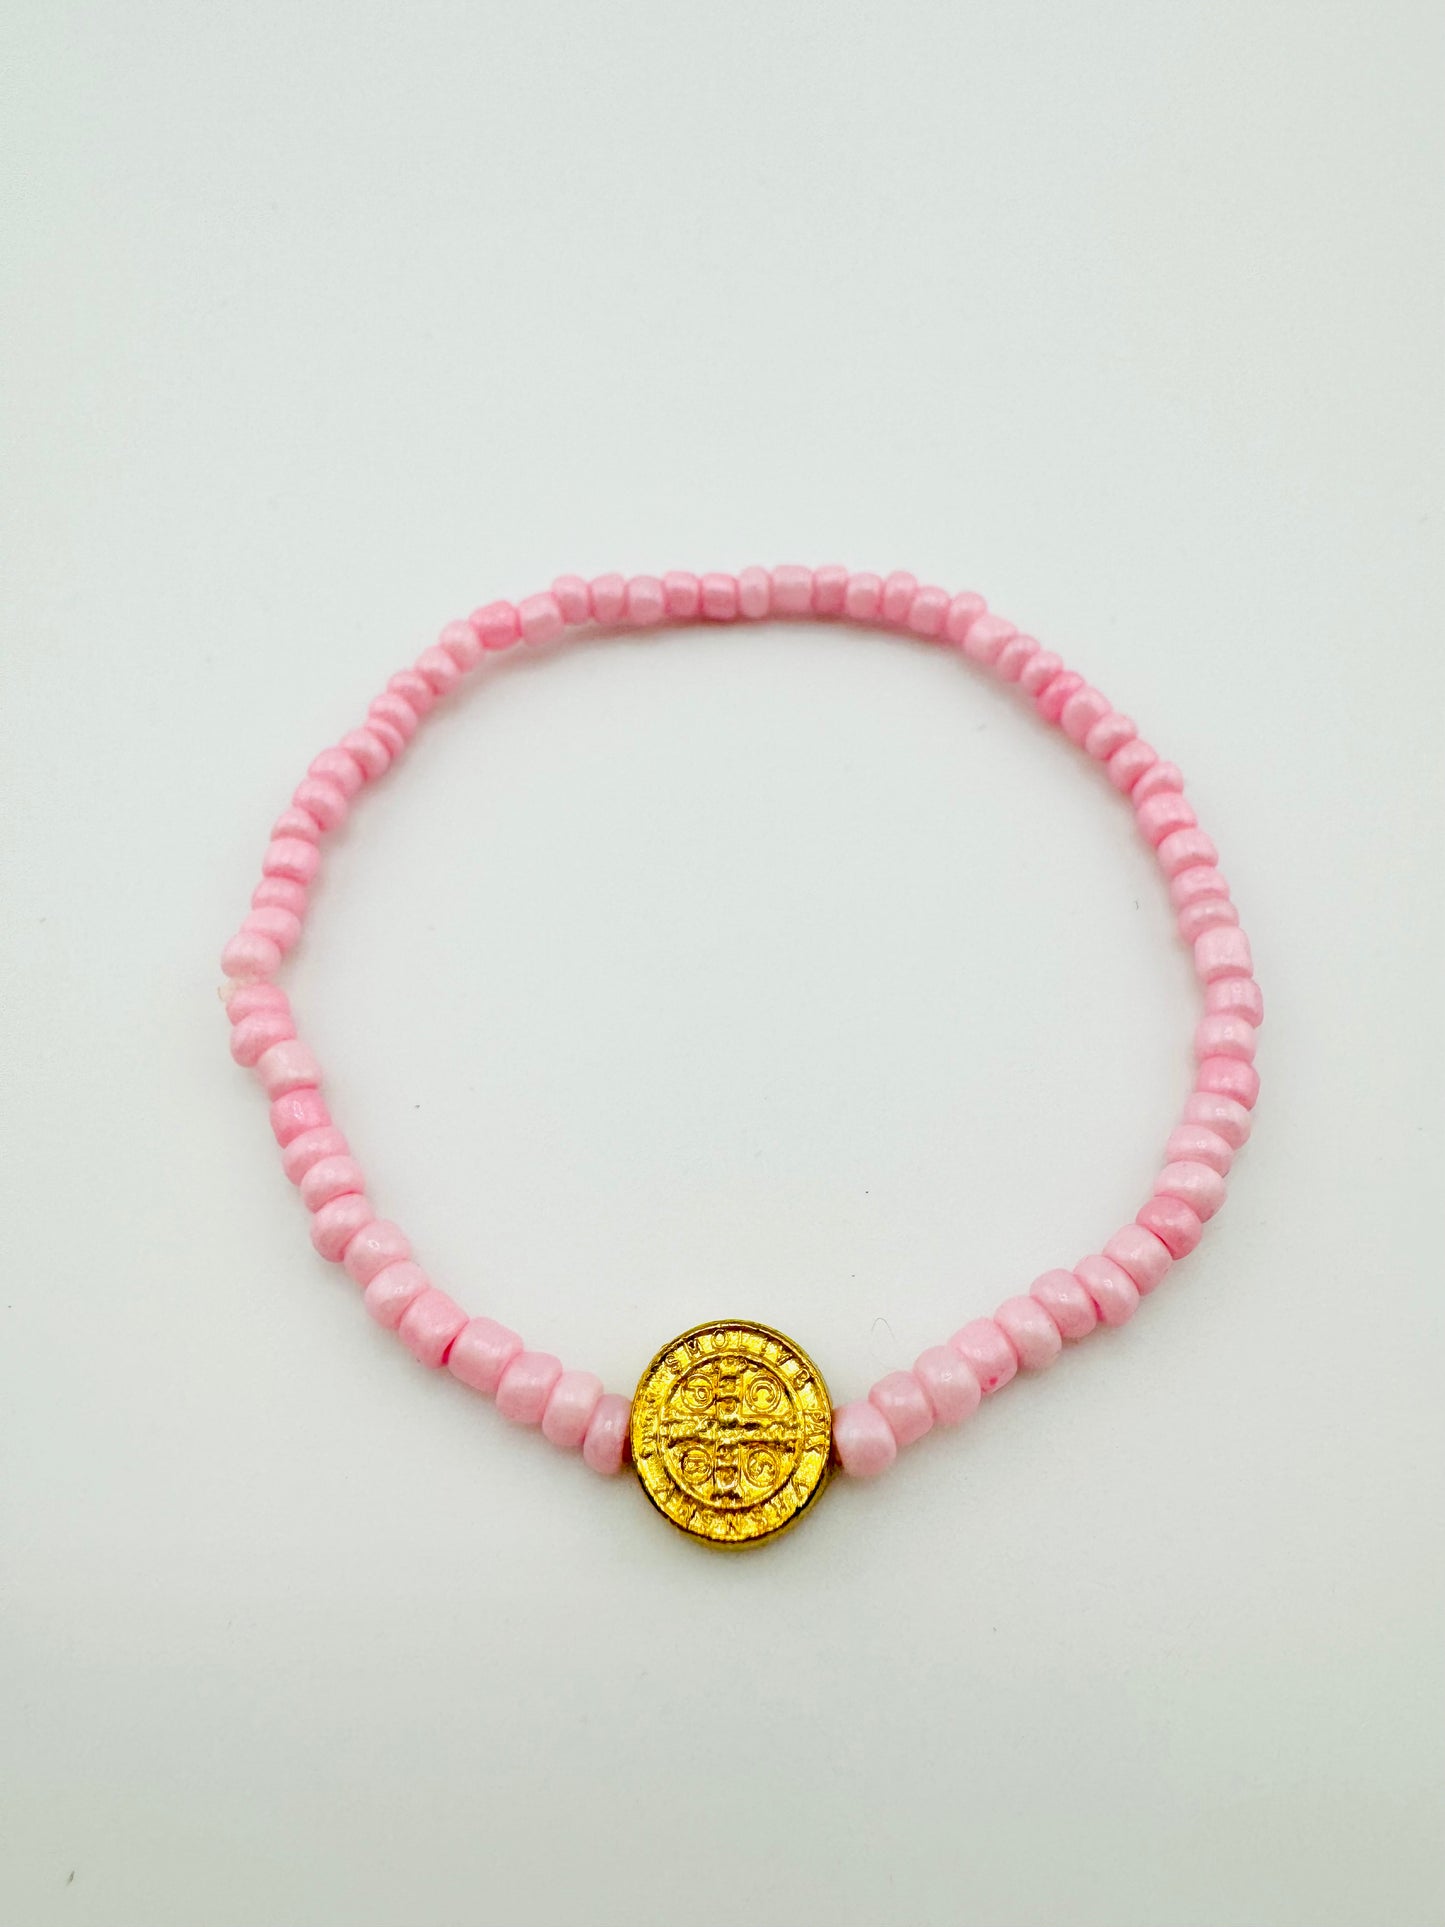 Violet pink beaded gold filled elastic bracelet